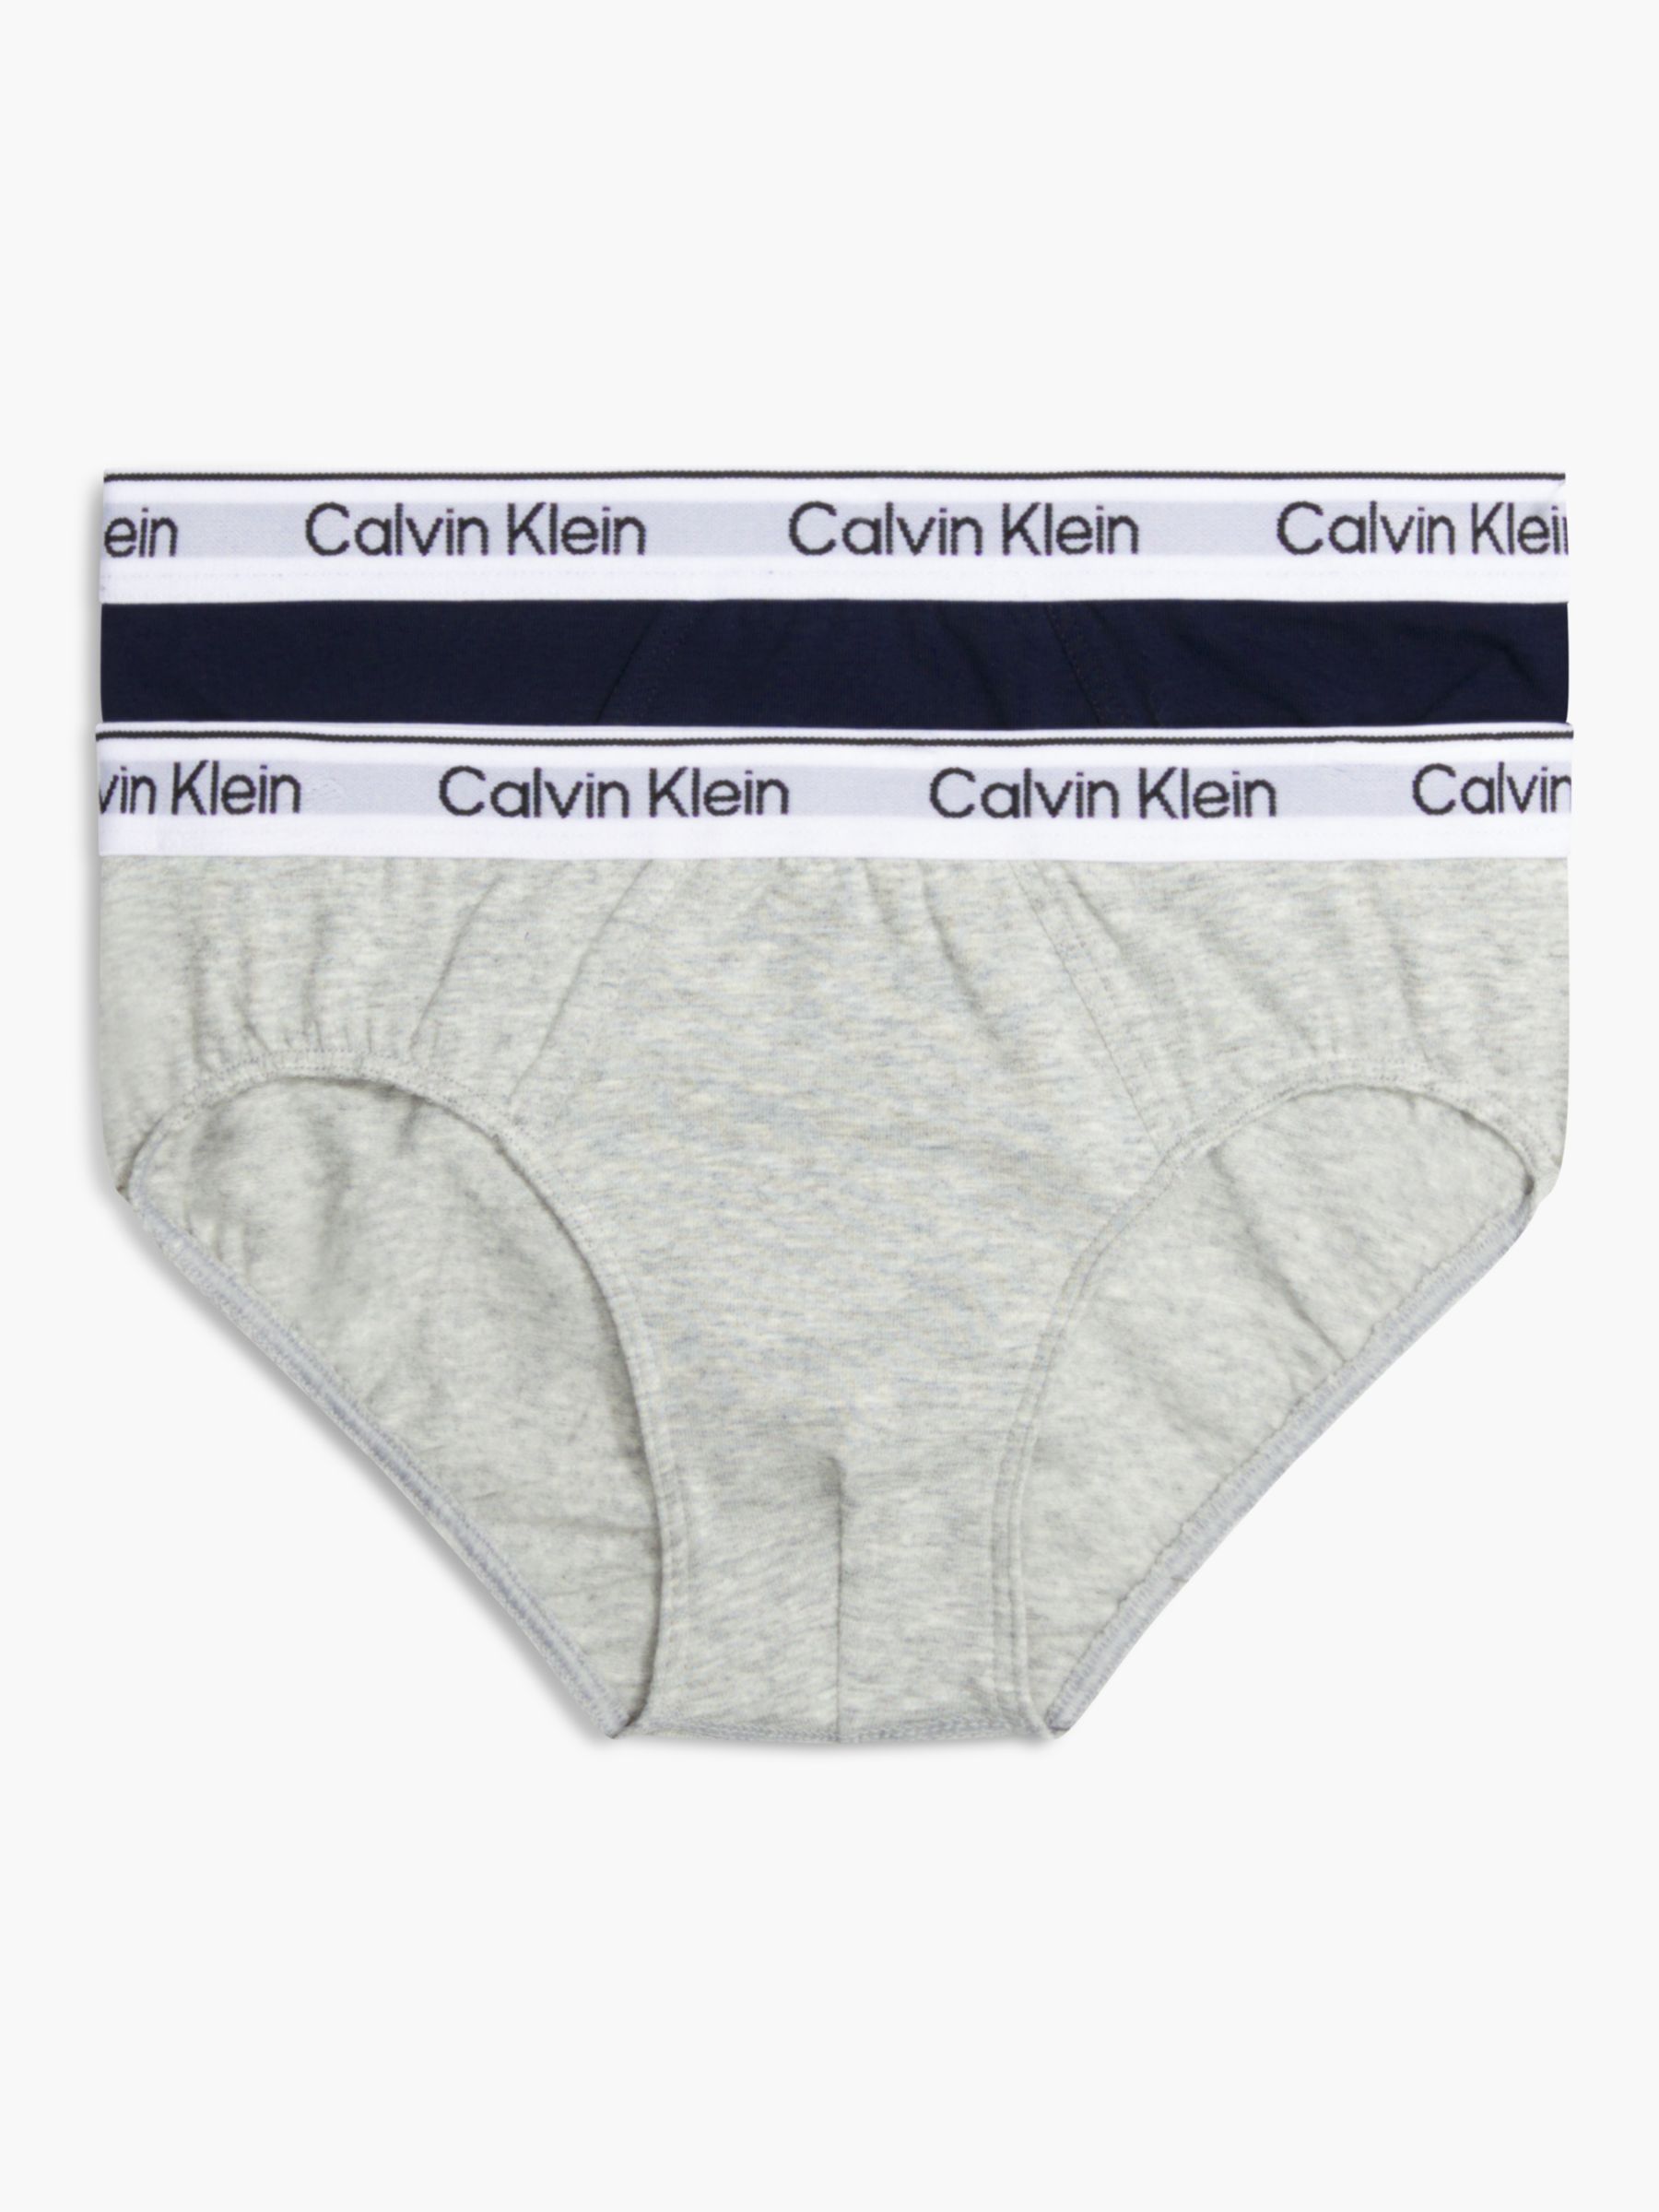 Calvin Klein Kids' Modern Cotton Briefs, Pack of 2, Multi, 8-10 years